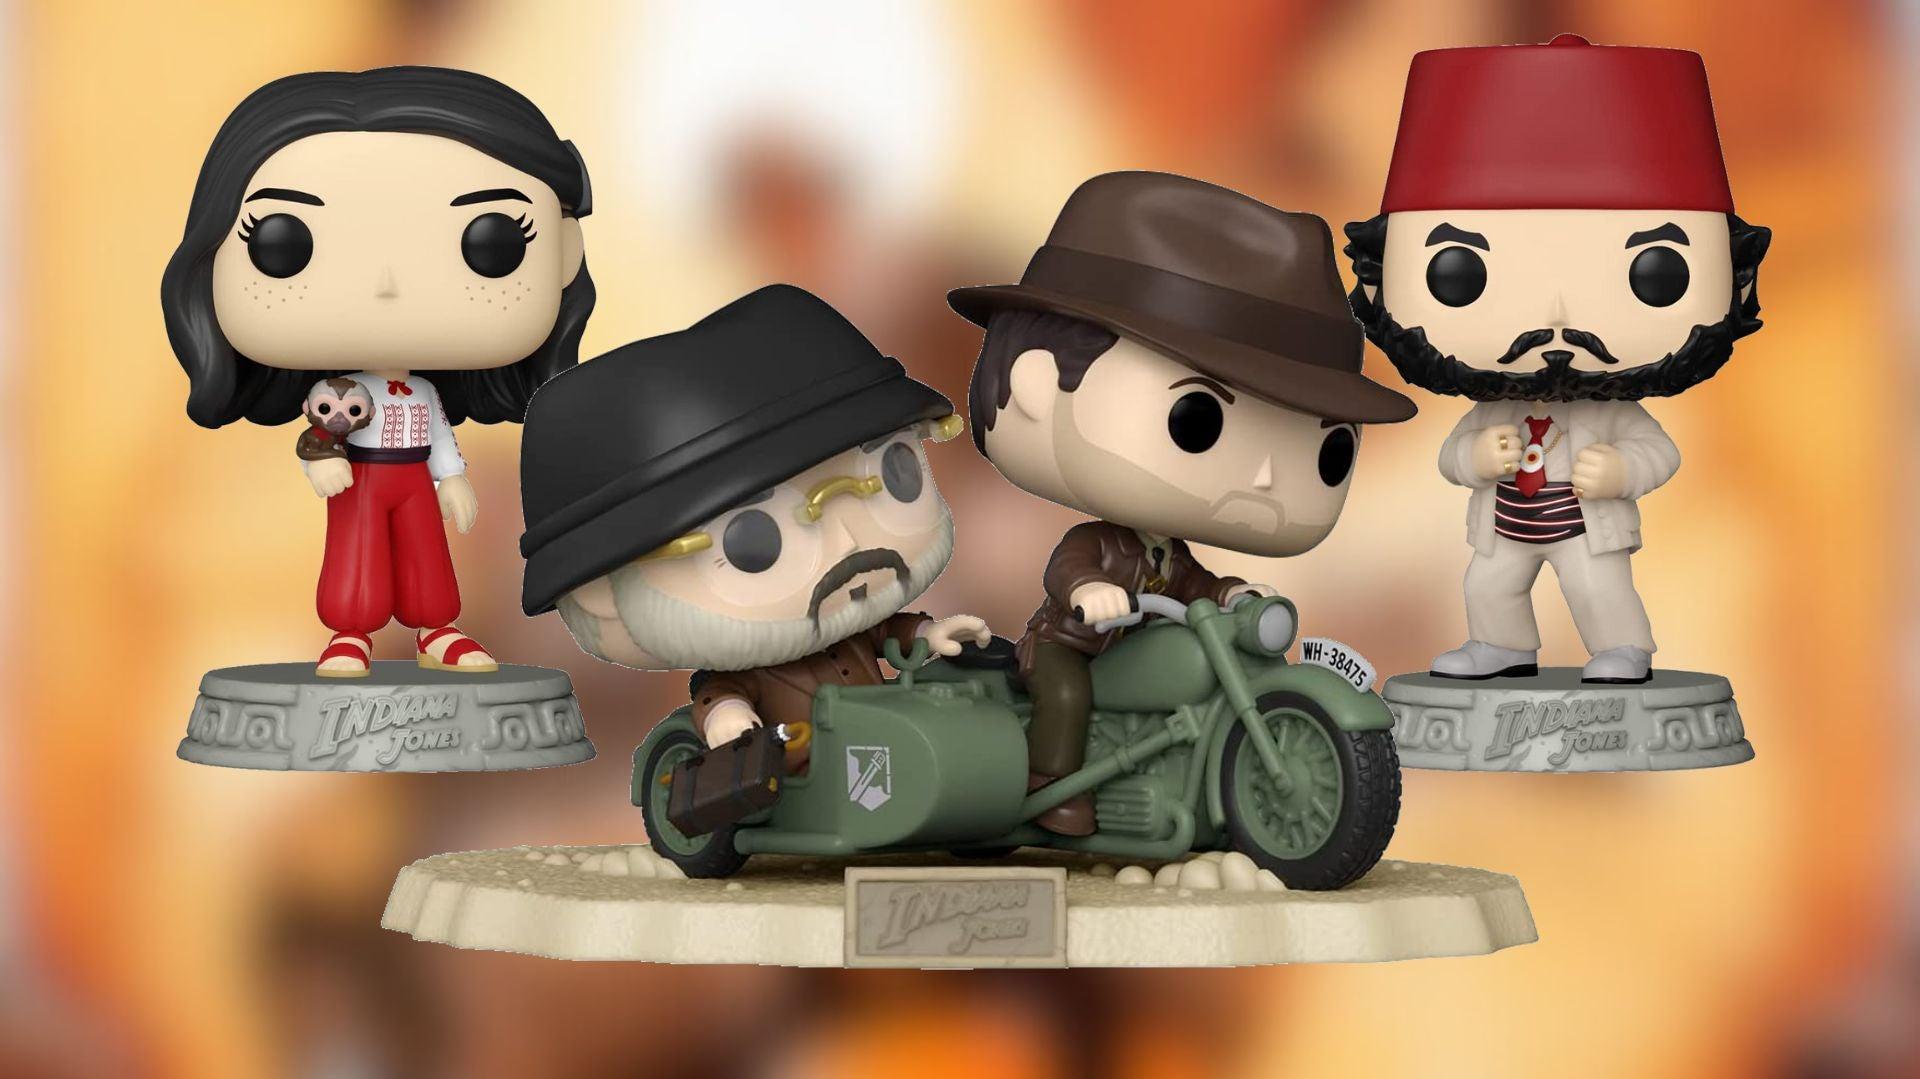 Pre Order Indiana Jones Funko Pops On Amazon Ign